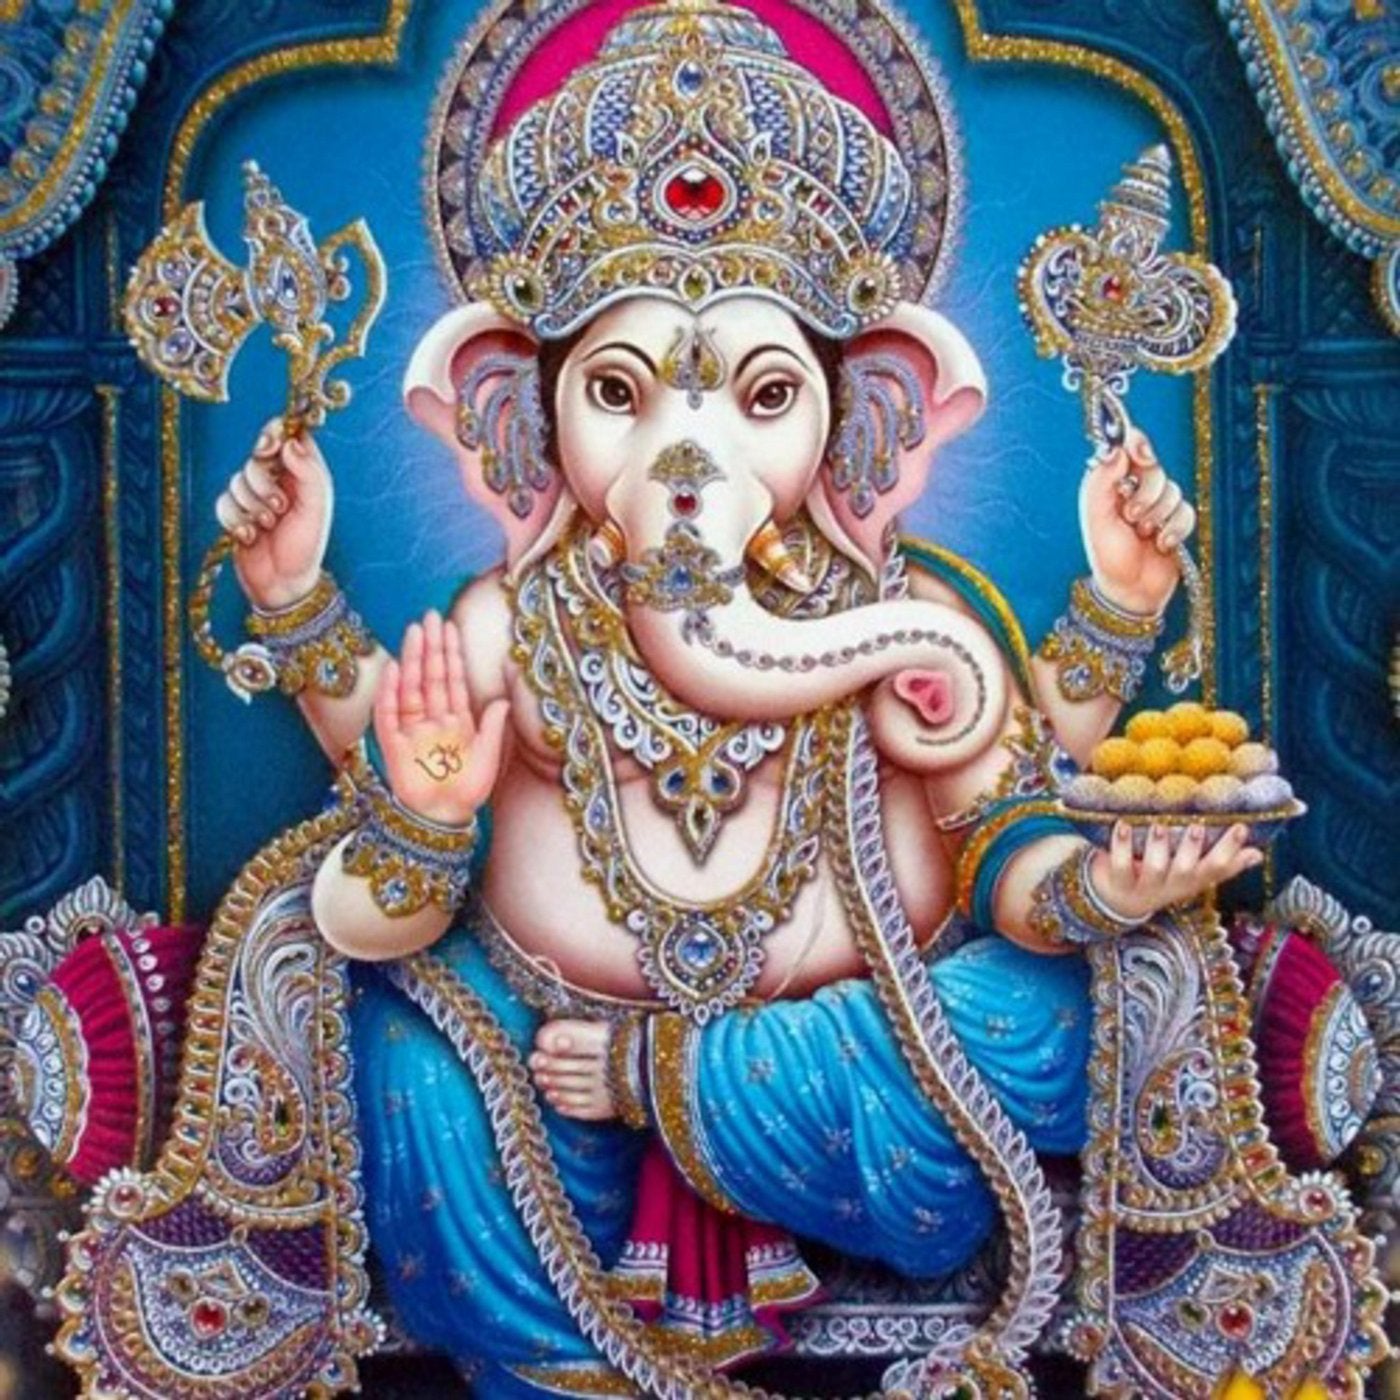 Baba Ganesh